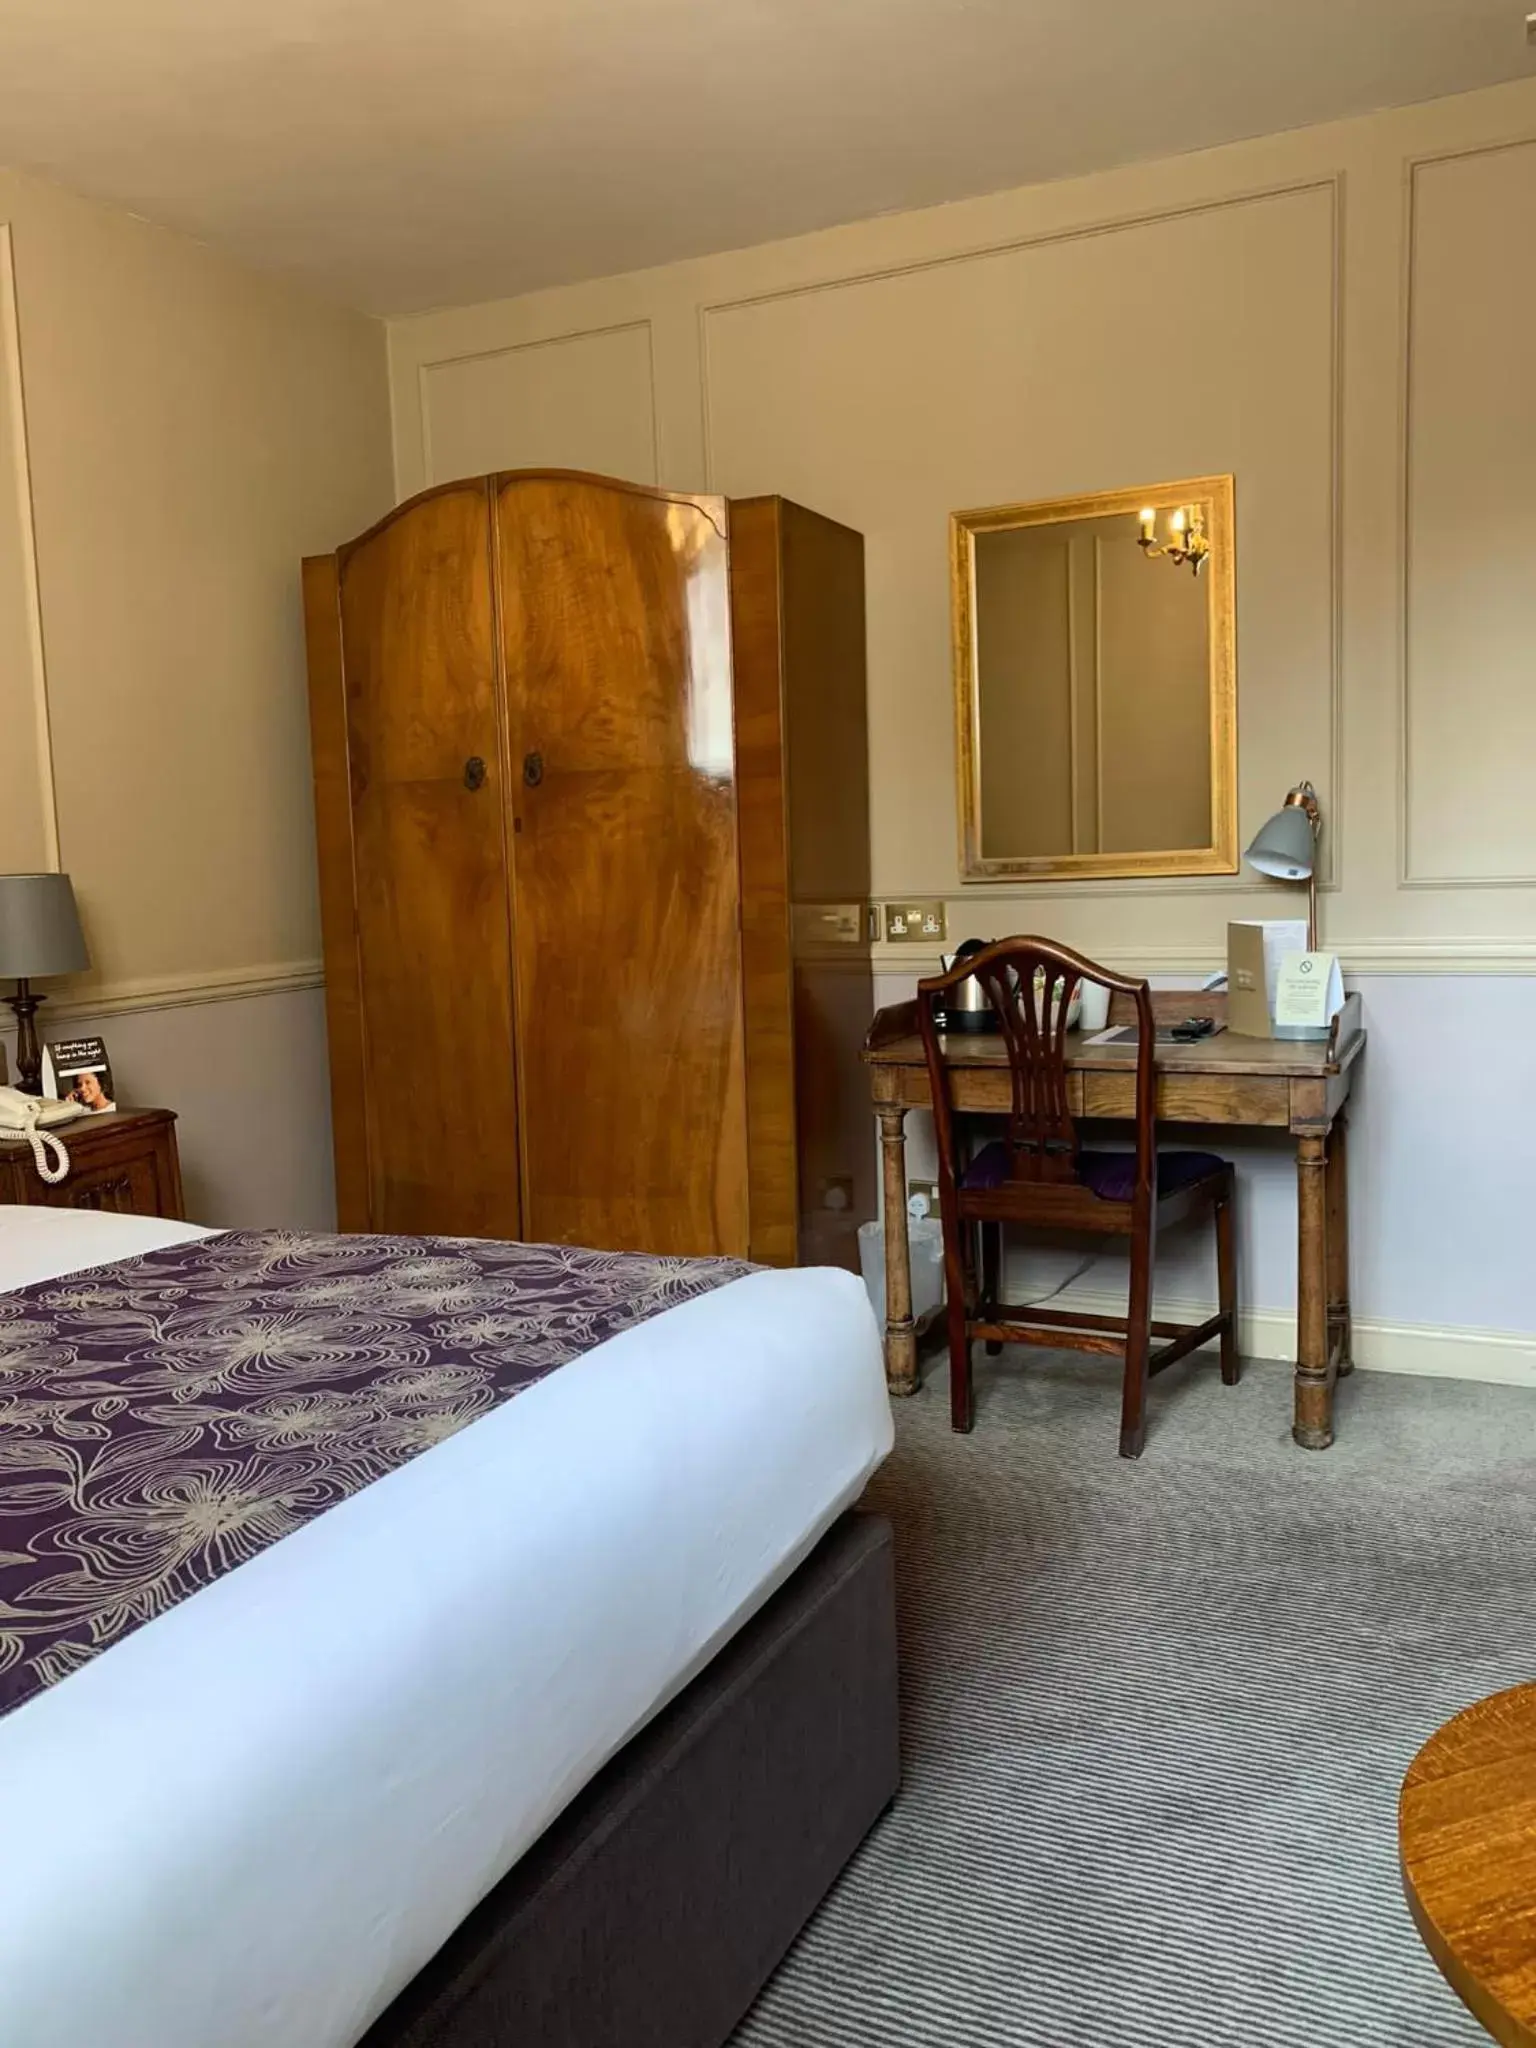 Bedroom in Saracens Head Hotel by Greene King Inns